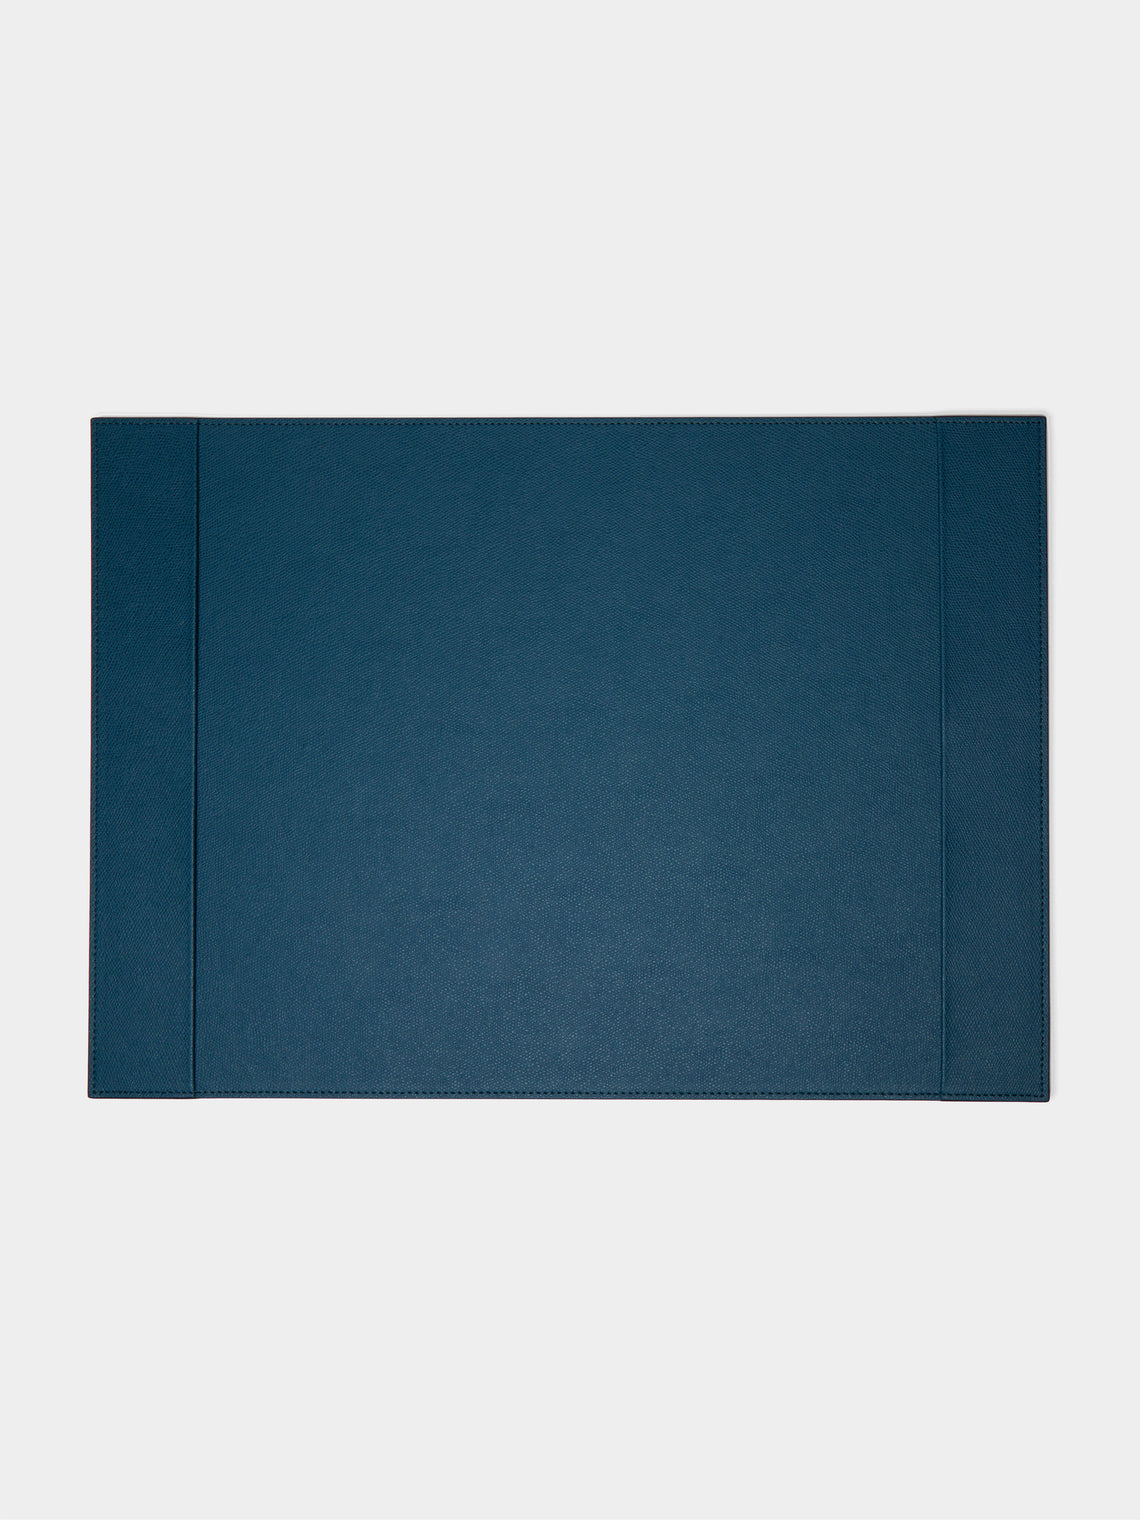 Giobagnara - Douglas Leather Desk Blotter - Blue - ABASK - 